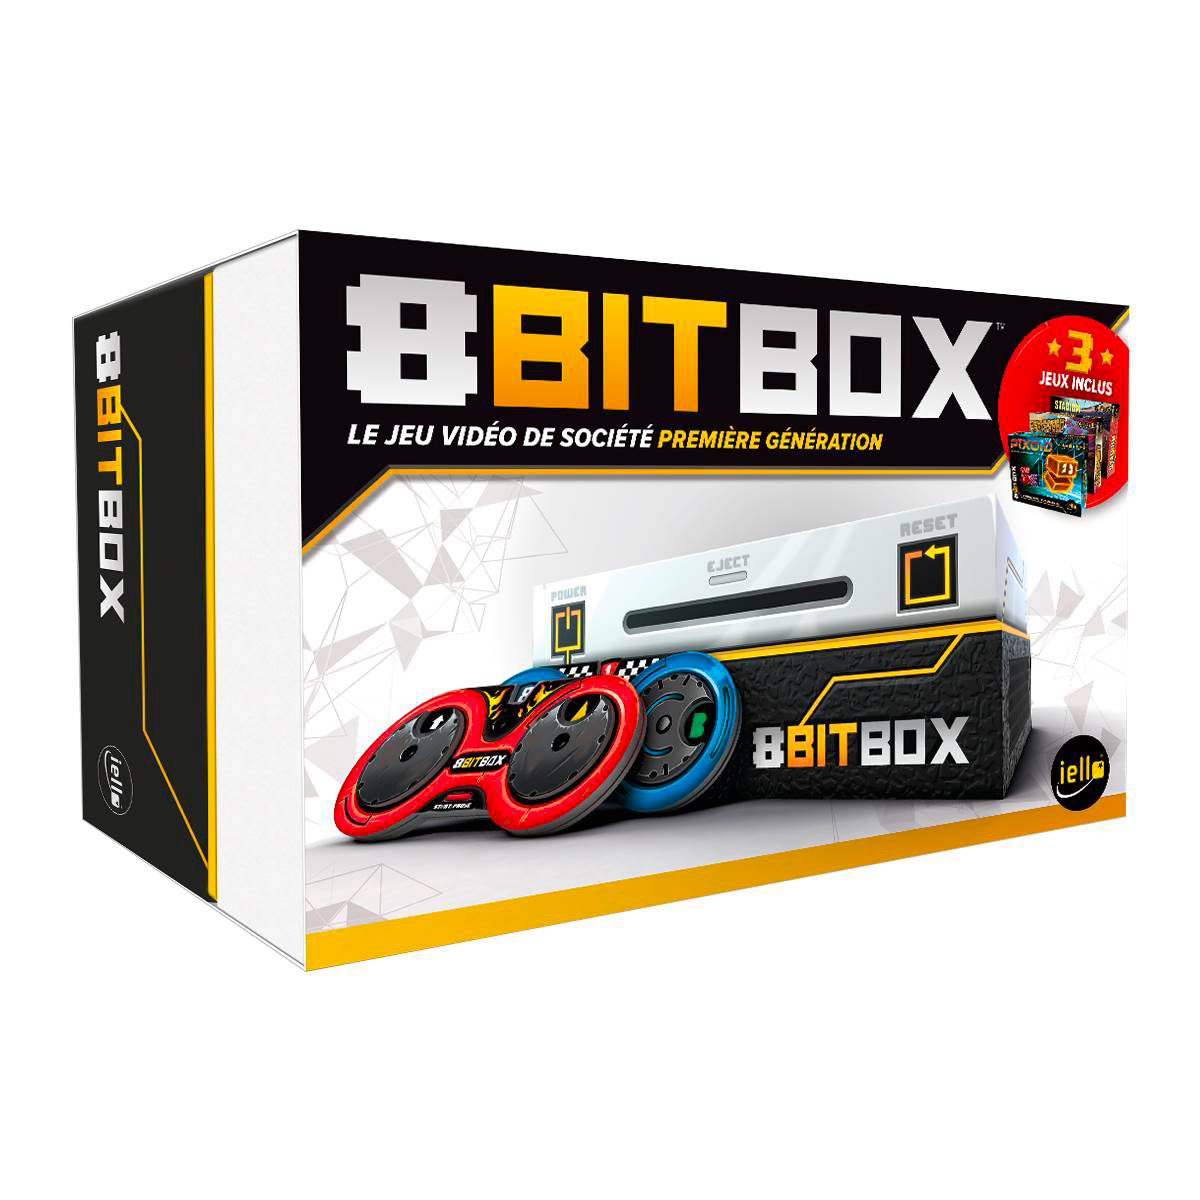 8 Bit Box boite